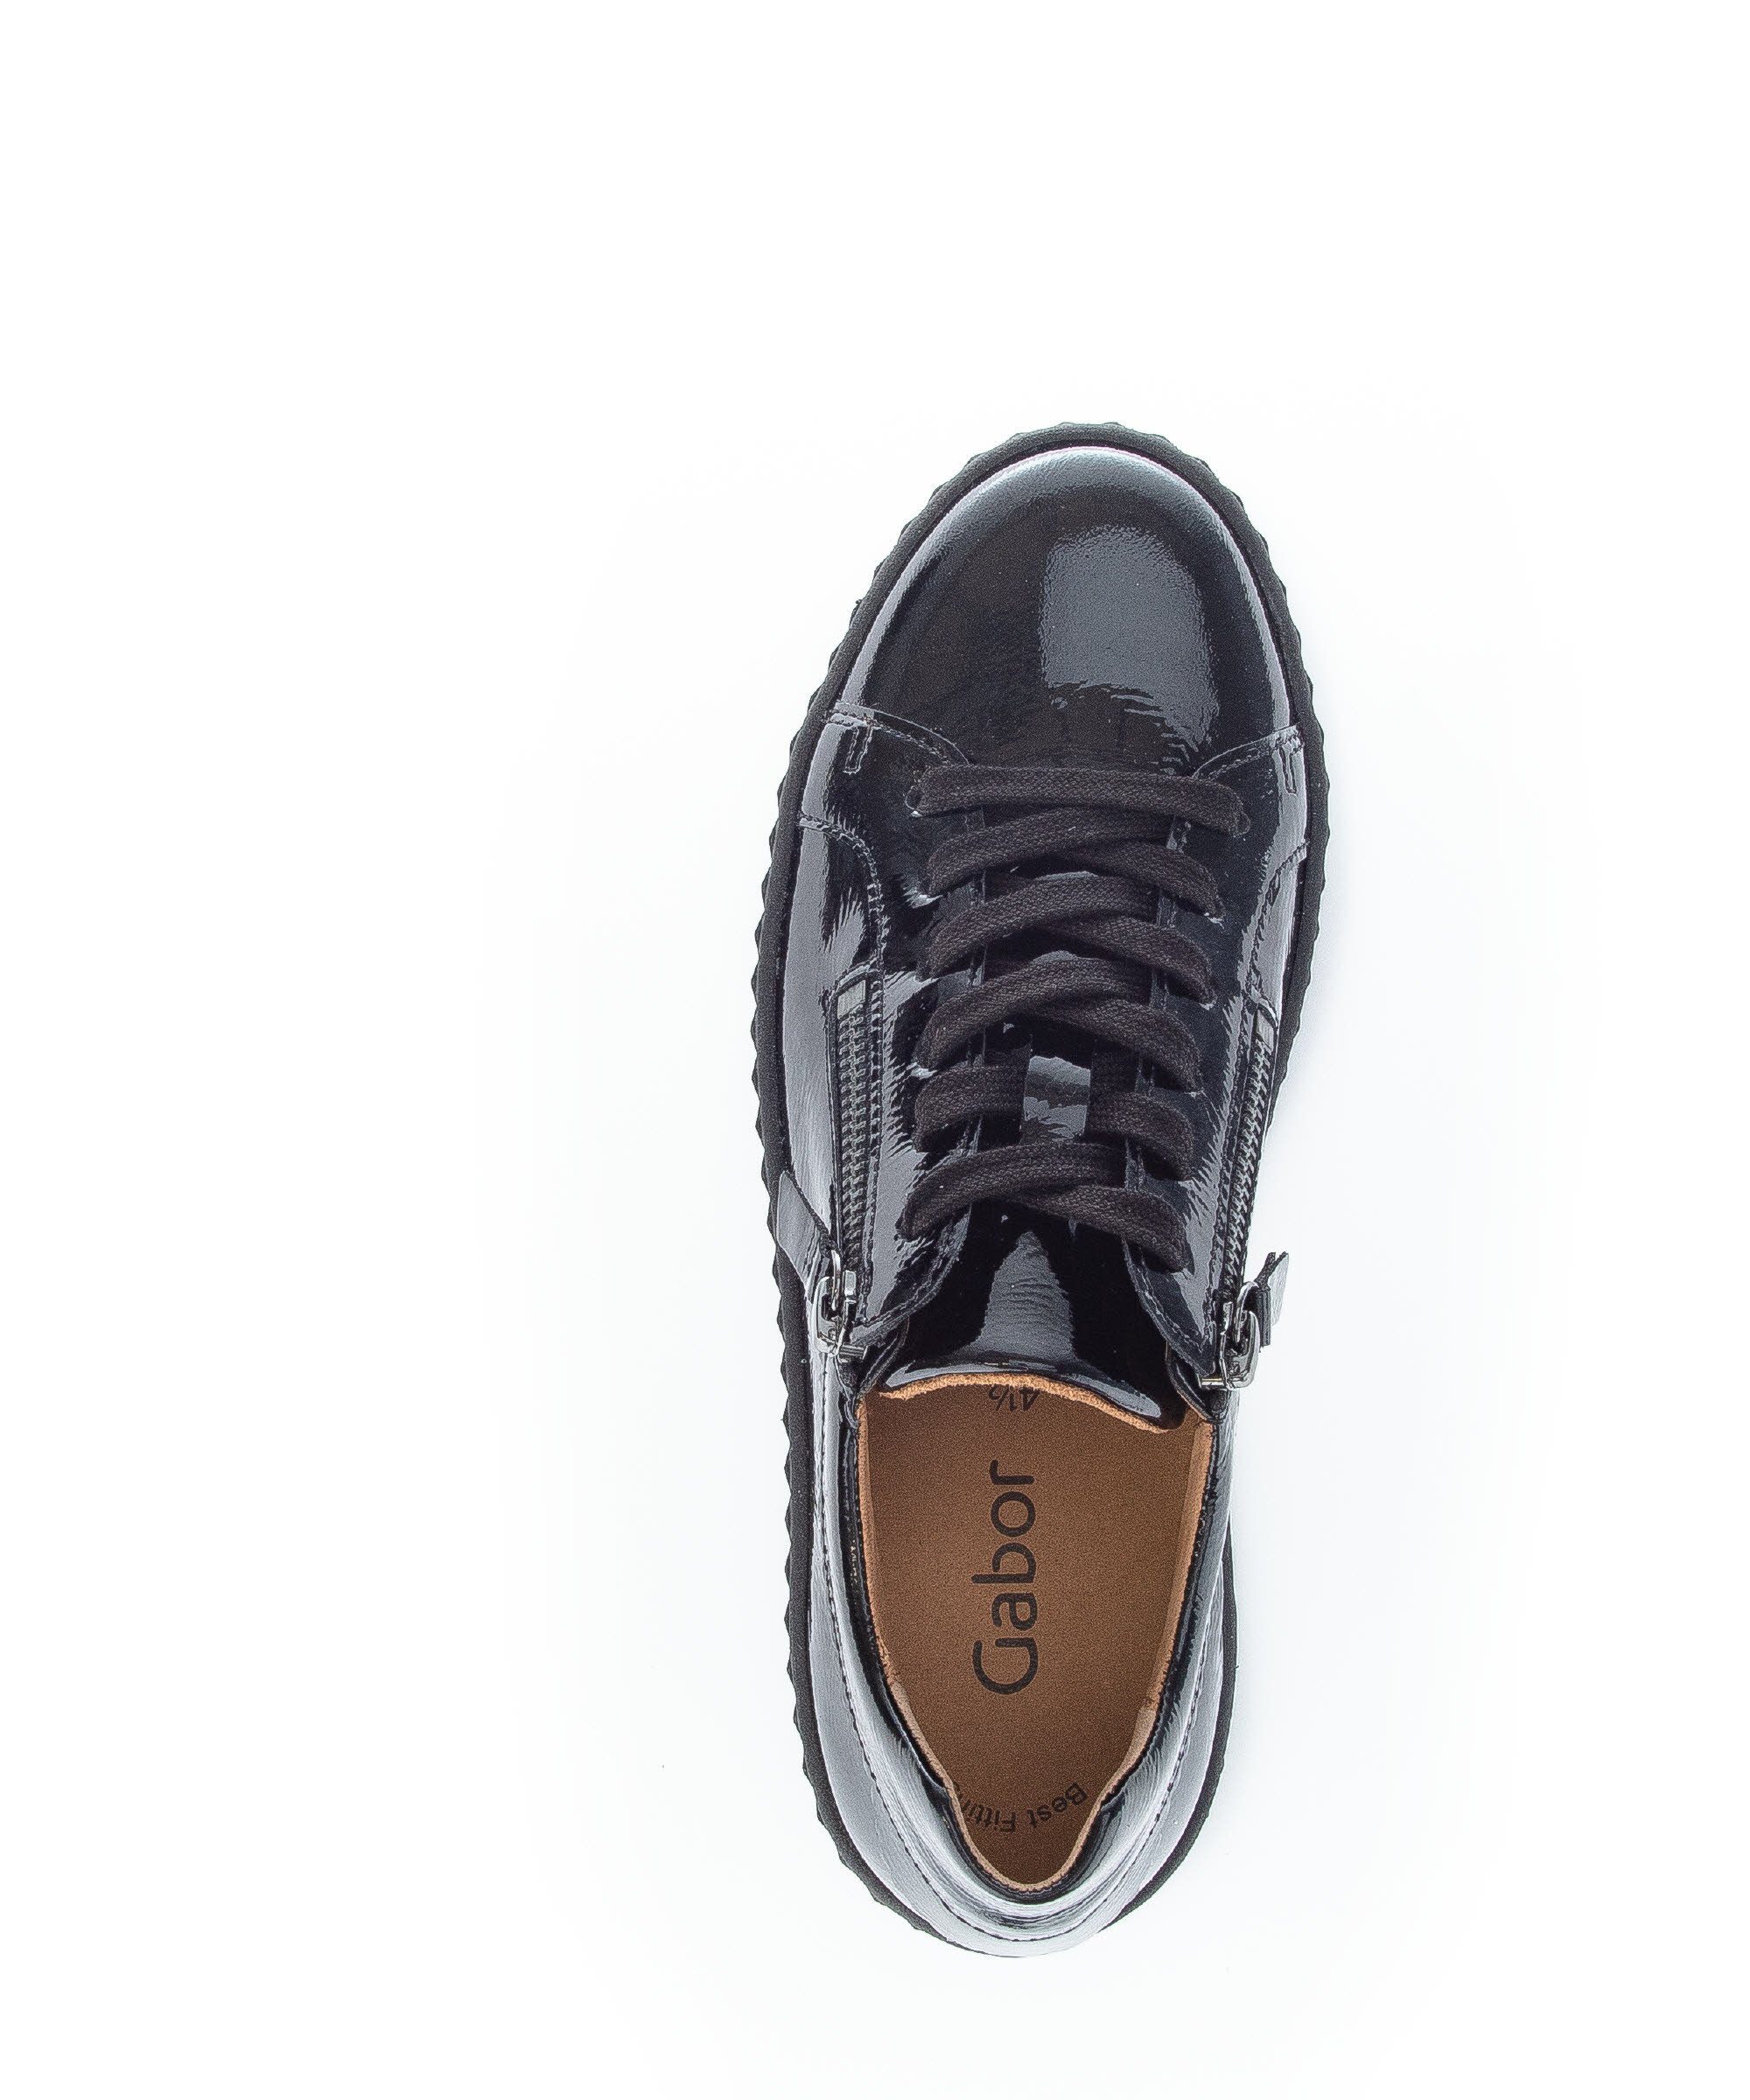 Gabor 93.200.97 schwarz Sneaker